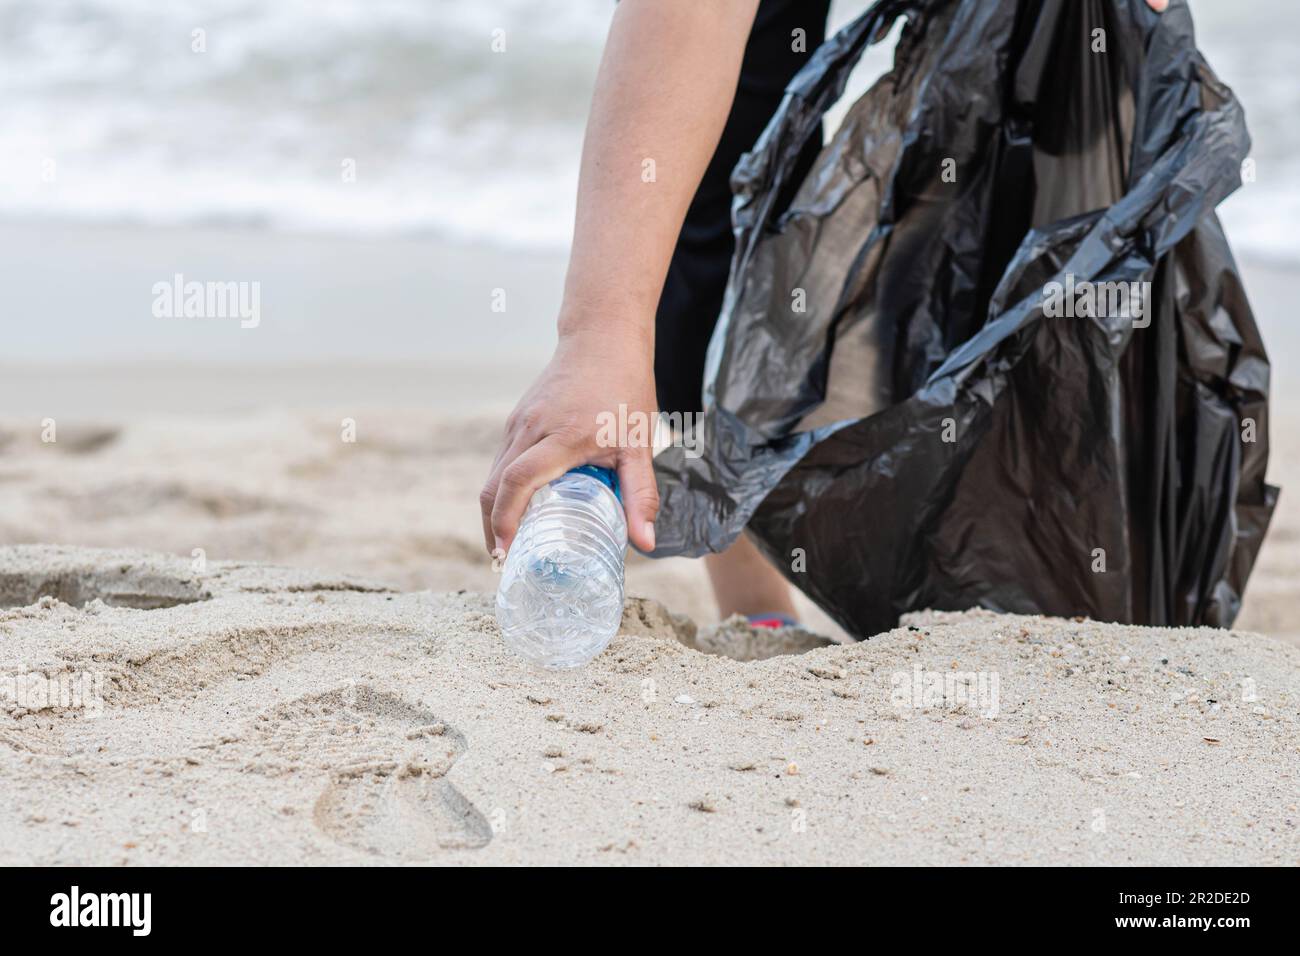 Eine Frau putzt, indem sie Plastikflaschen am Strand abholt. Konzept des Umweltschutzes, der Rettung der Welt, des Recyclings, der Reduzierung des globalen Warminhalts Stockfoto